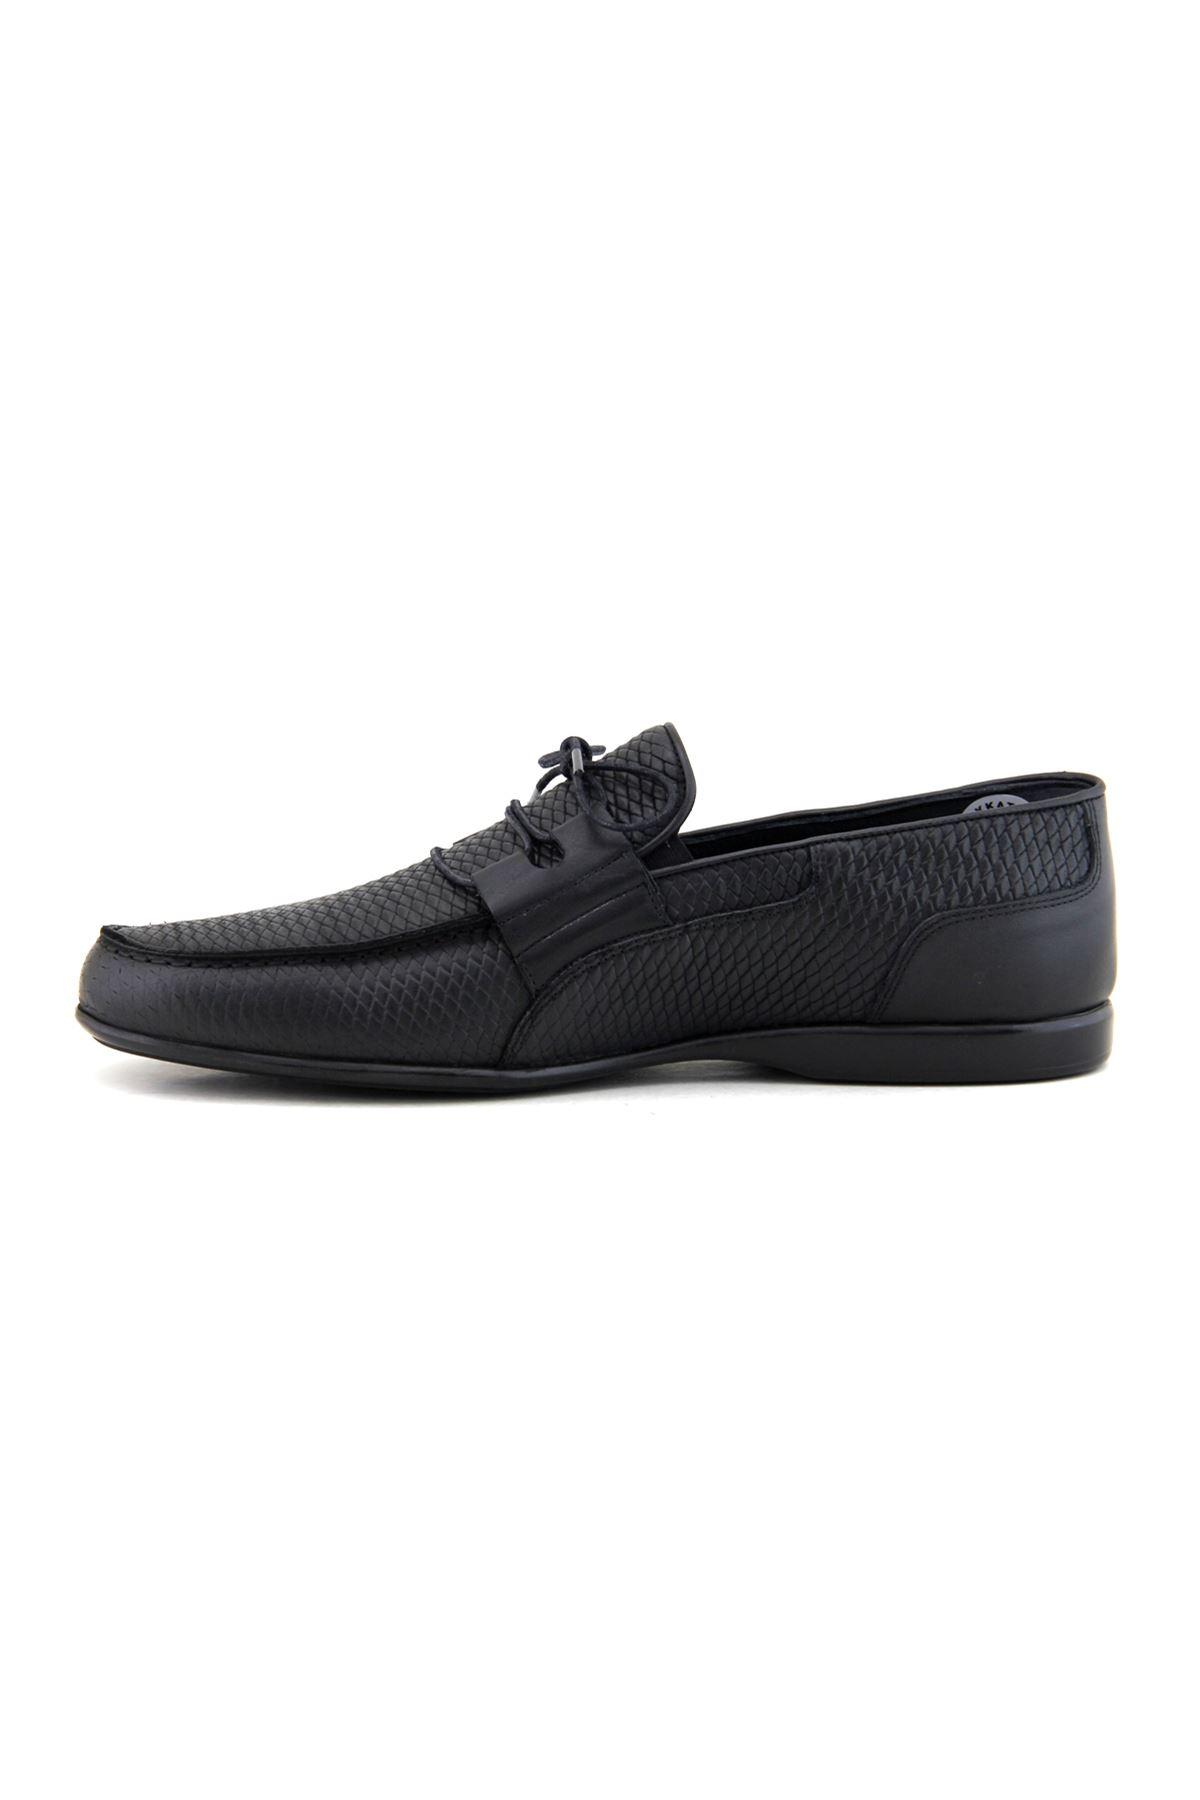 Fosco 9032 Hakiki Deri Erkek Ayakkabı - Siyah